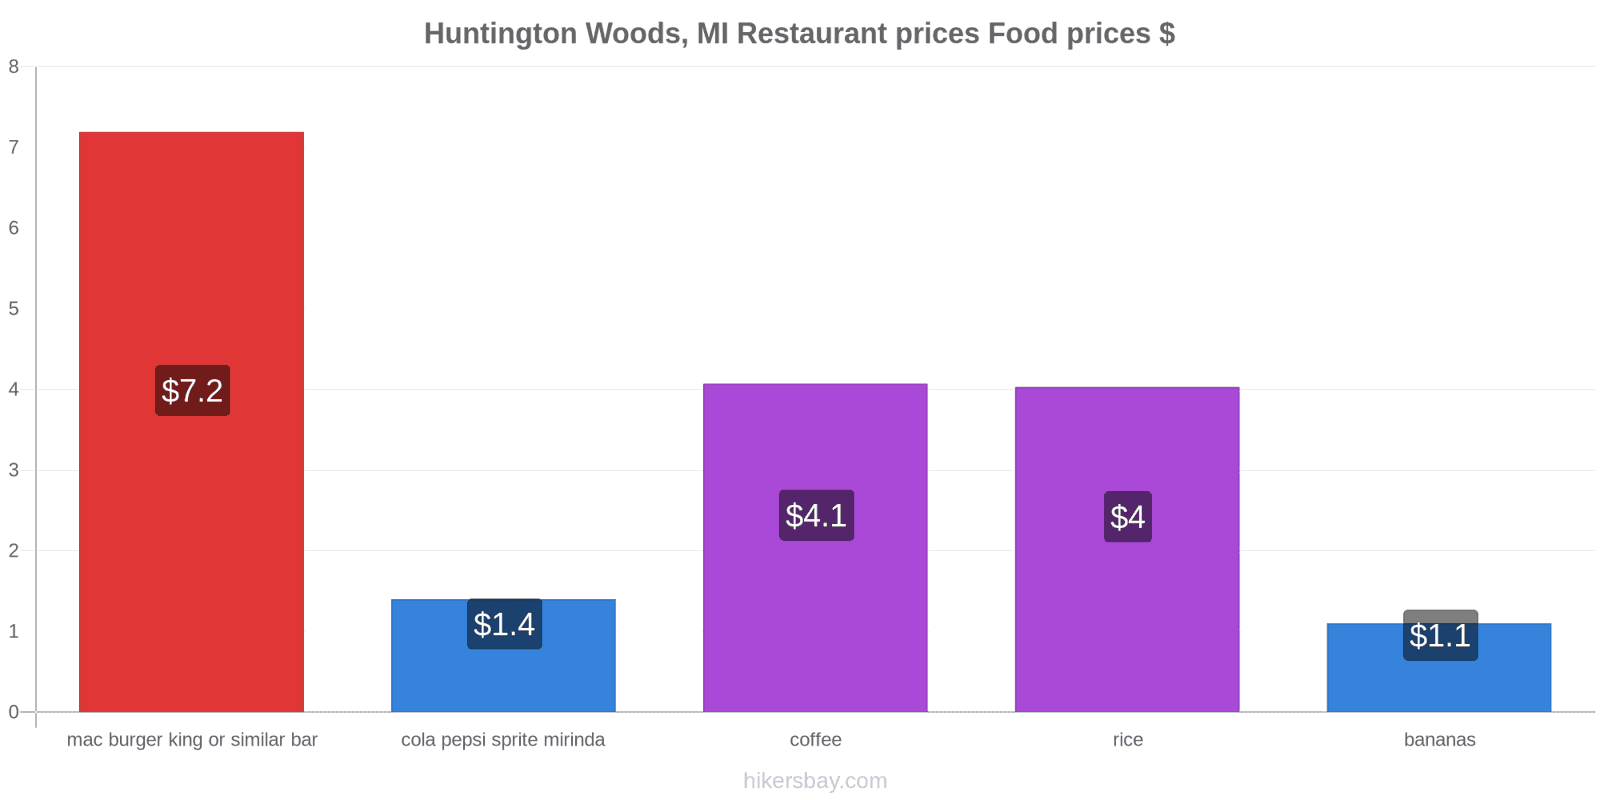 Huntington Woods, MI price changes hikersbay.com